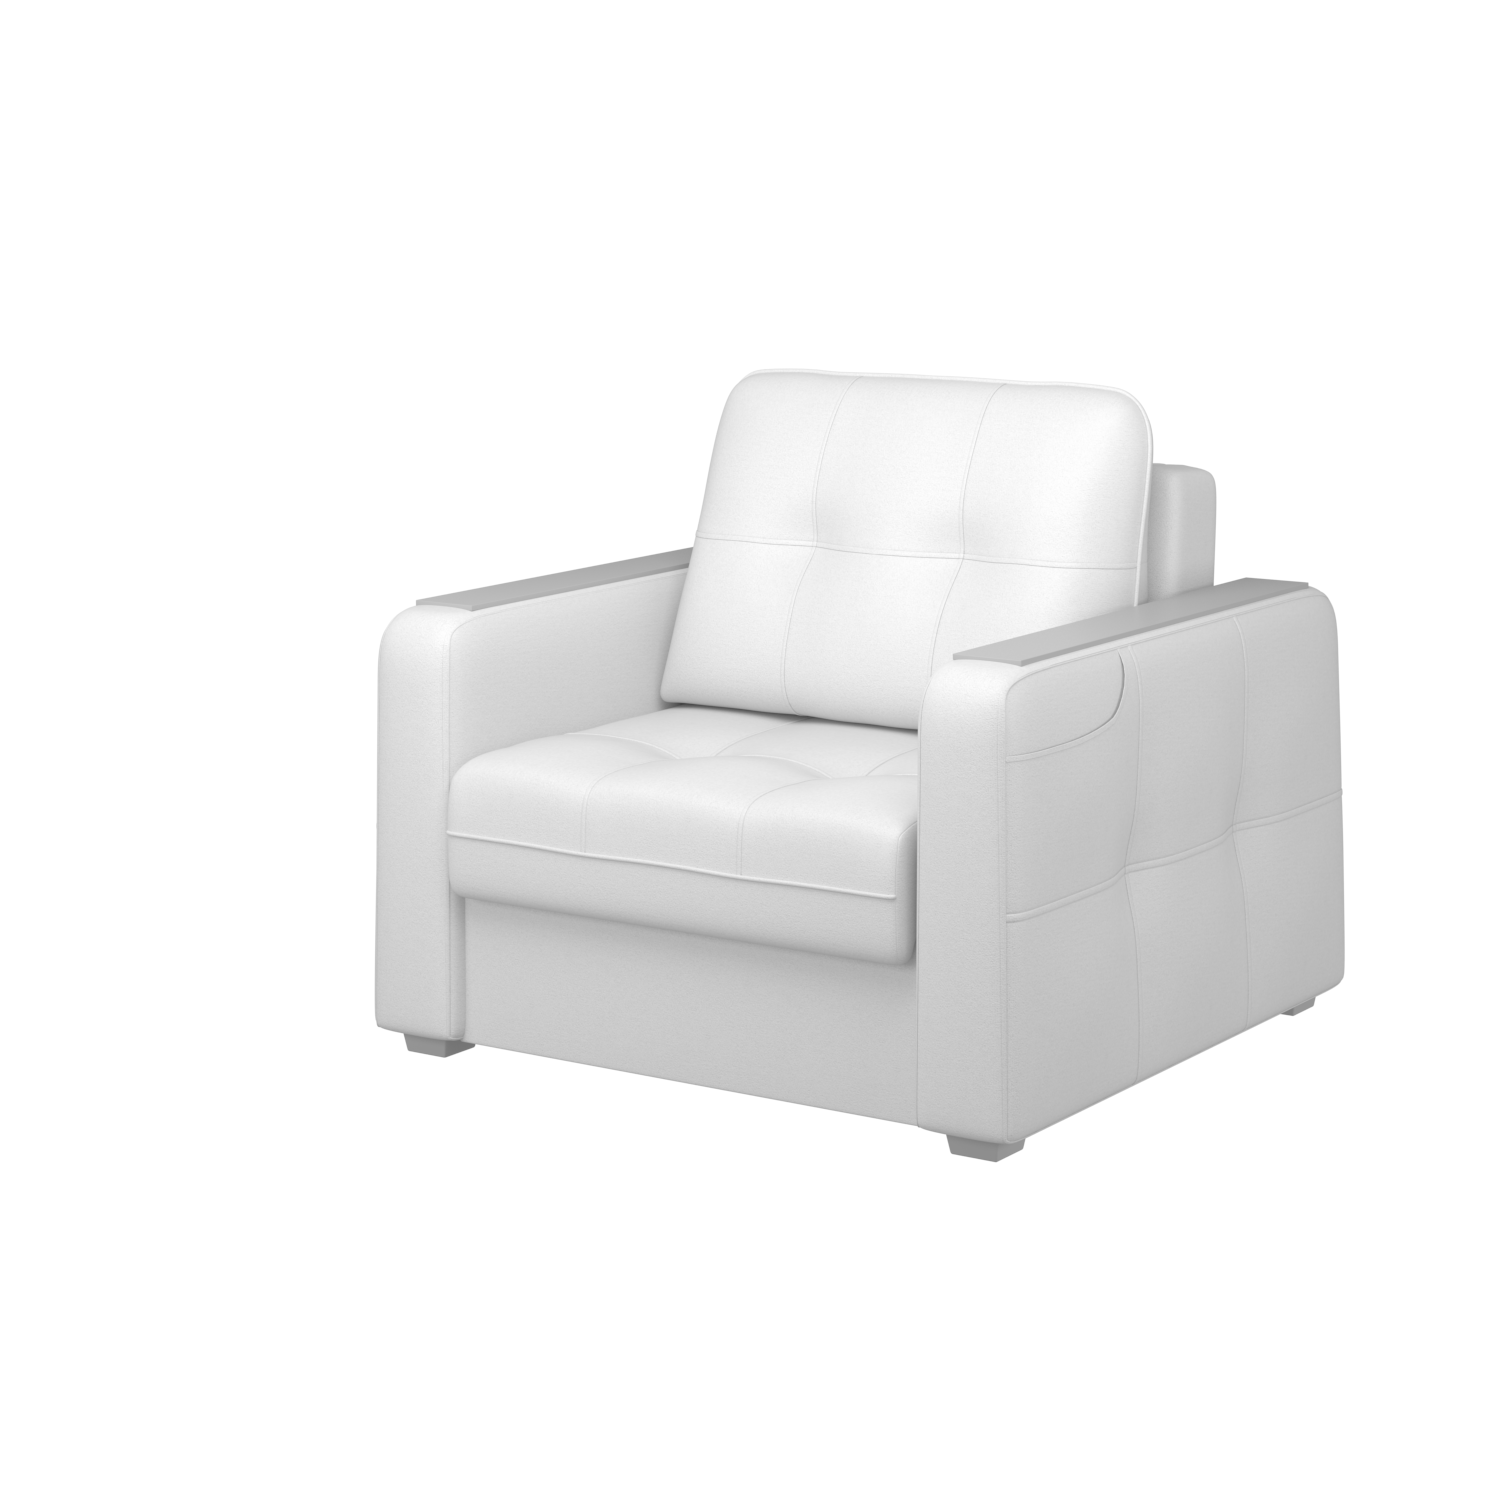 Мягкое кресло с ящиком Киль-3, кКЛ01.вл52.52у